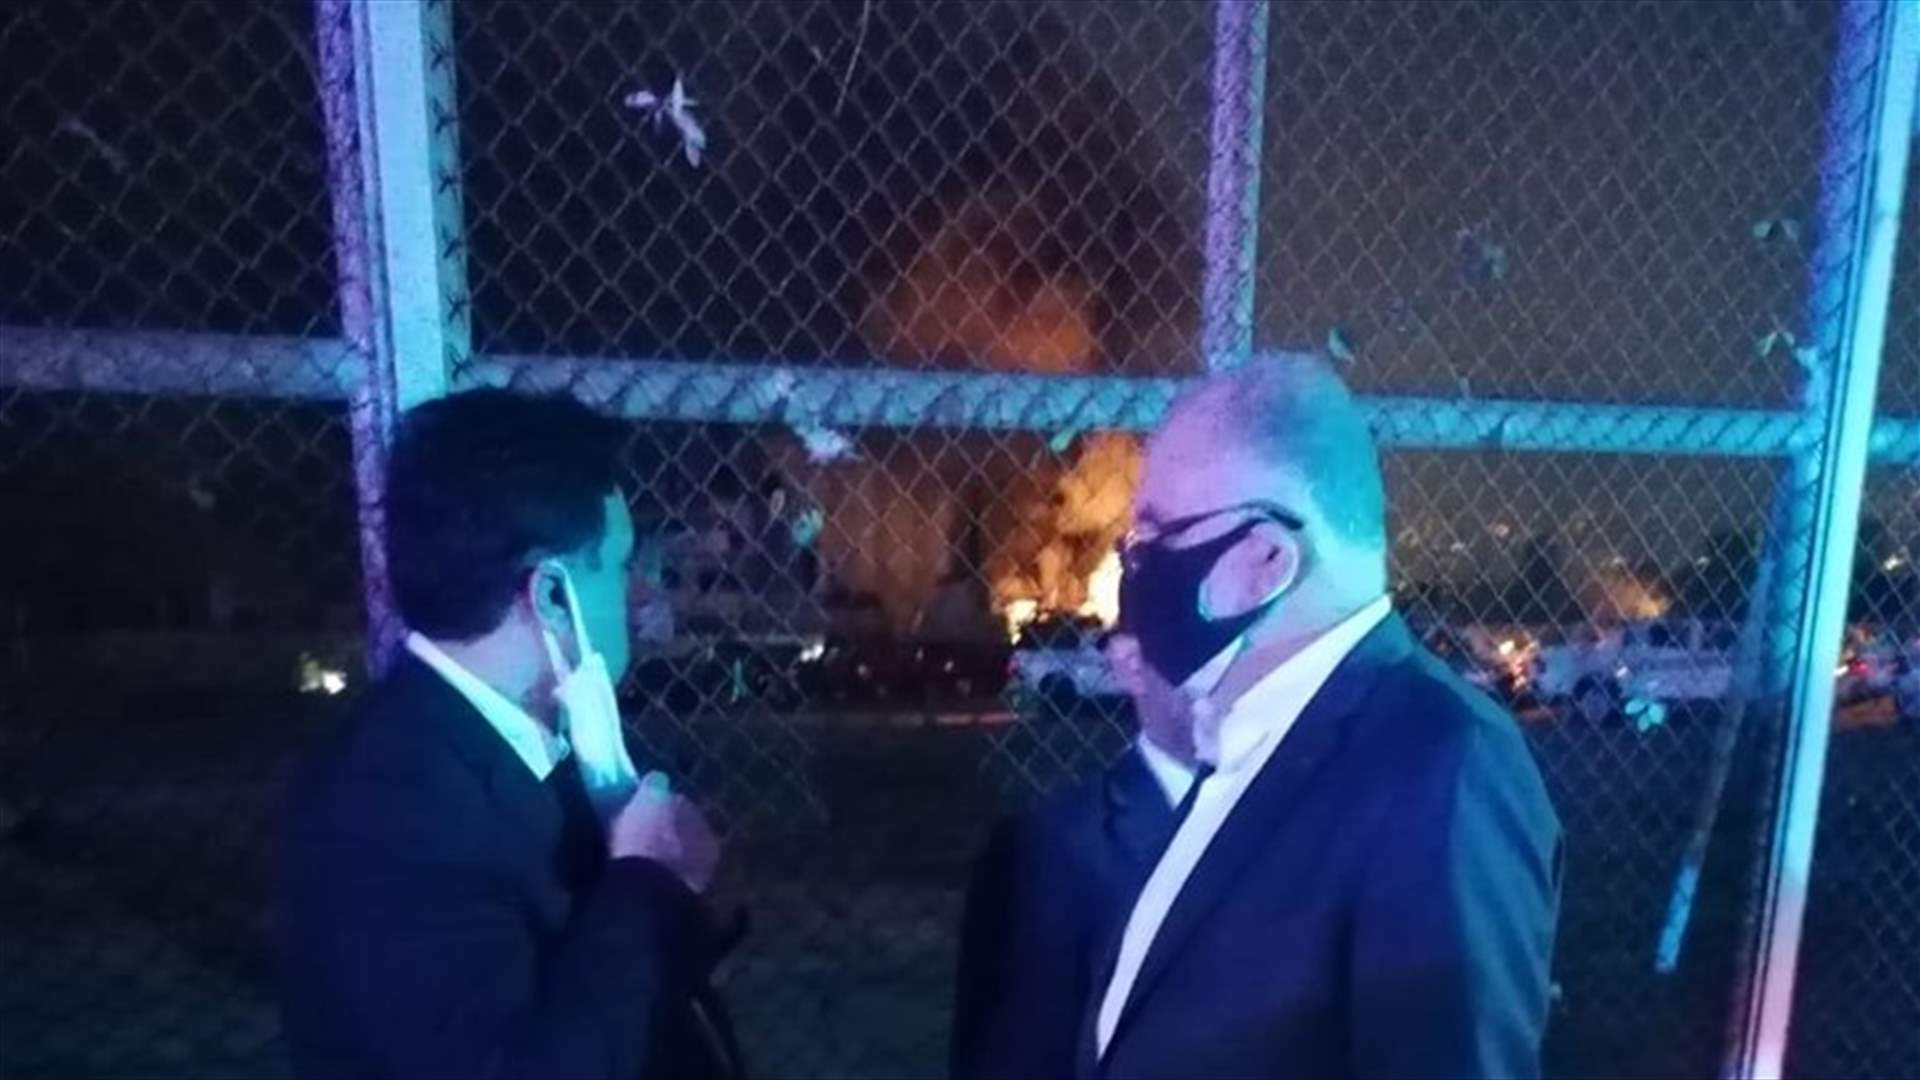 رئيس الحكومة ووزير الداخلية يعاينان مكان الانفجار في المرفأ (فيديو)